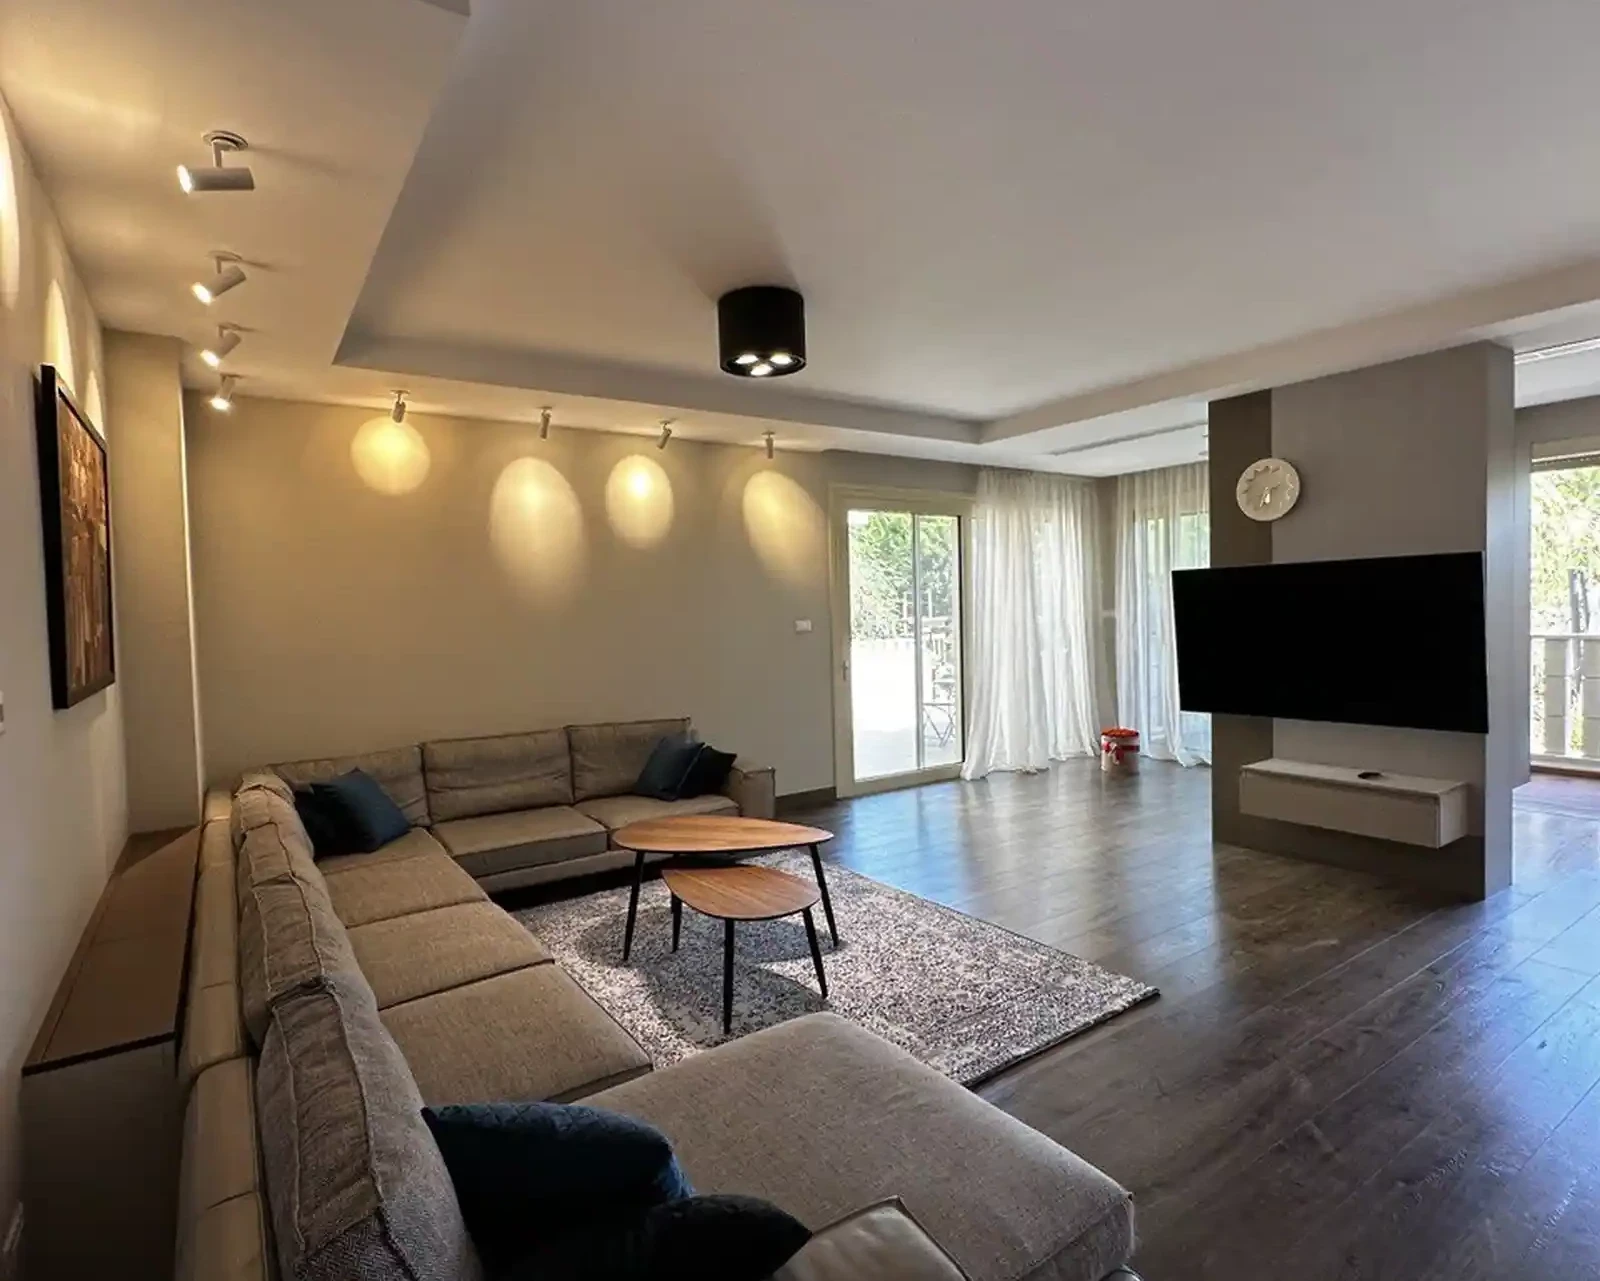 4-bedroom villa to rent €17.000, image 1